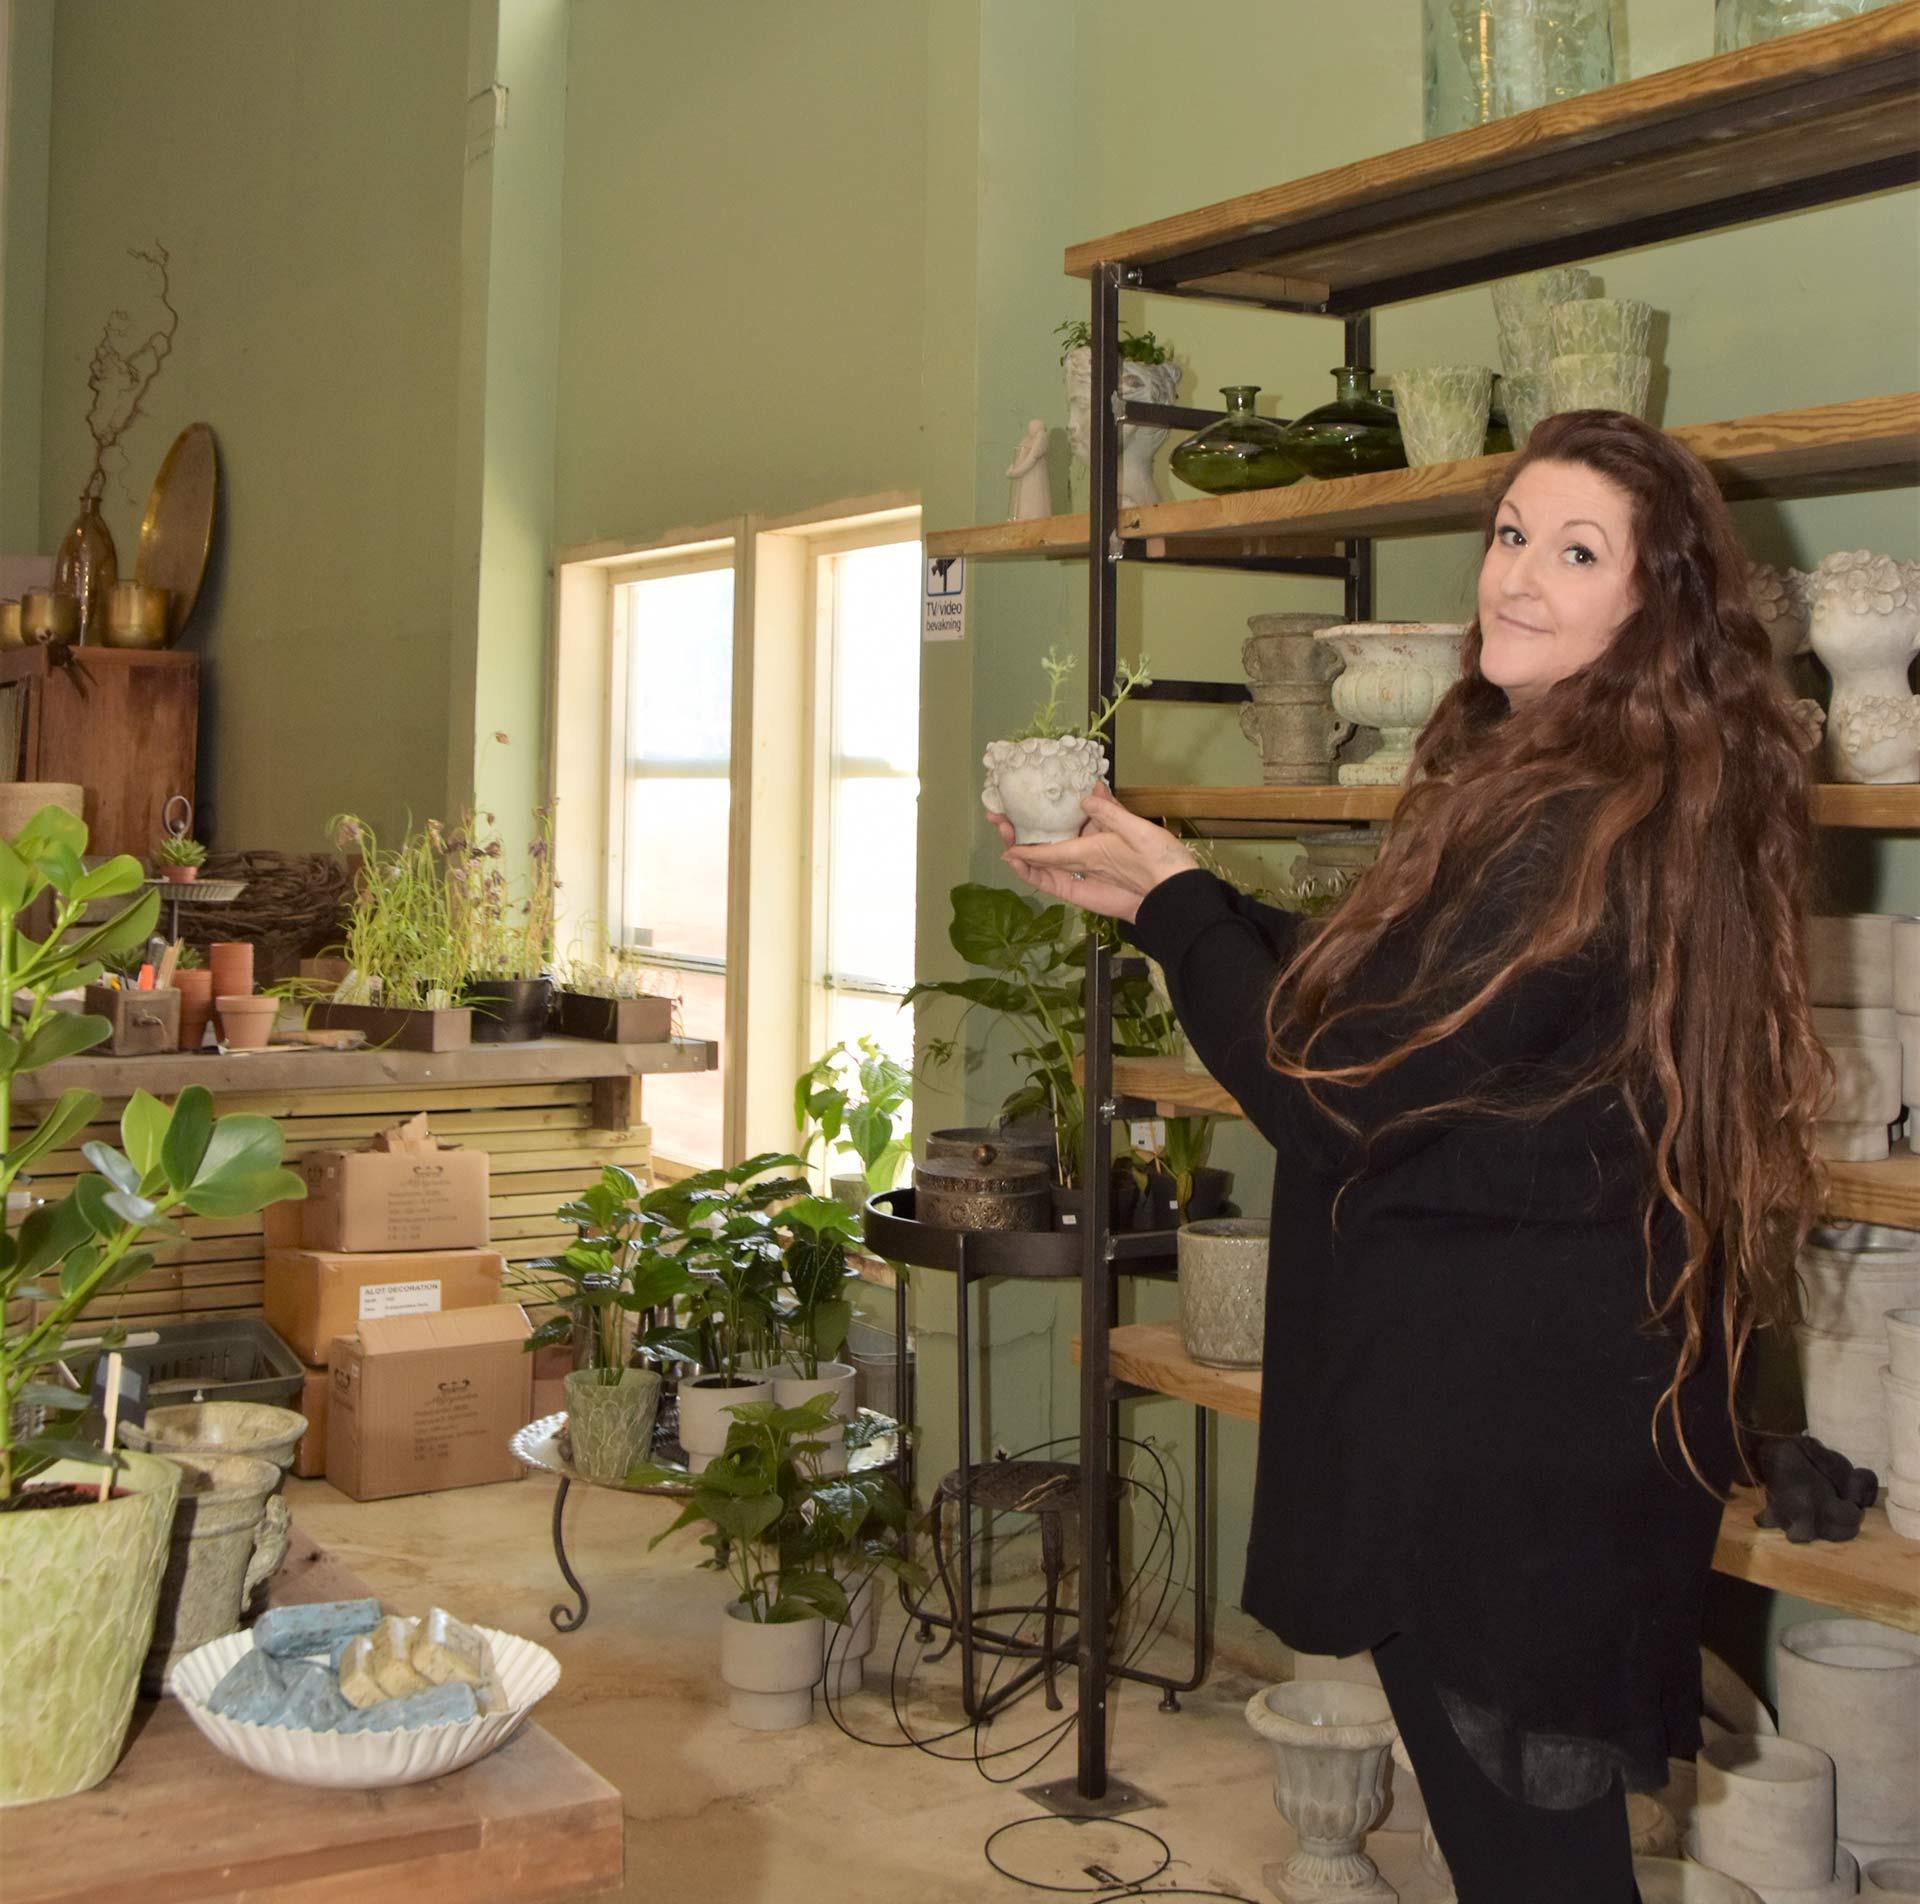 Martina håller upp en kruka med en liten växt och tittar in i kameran. I bakgrunden syns olika krukor, dekorationer och växter mot en grön vägg.